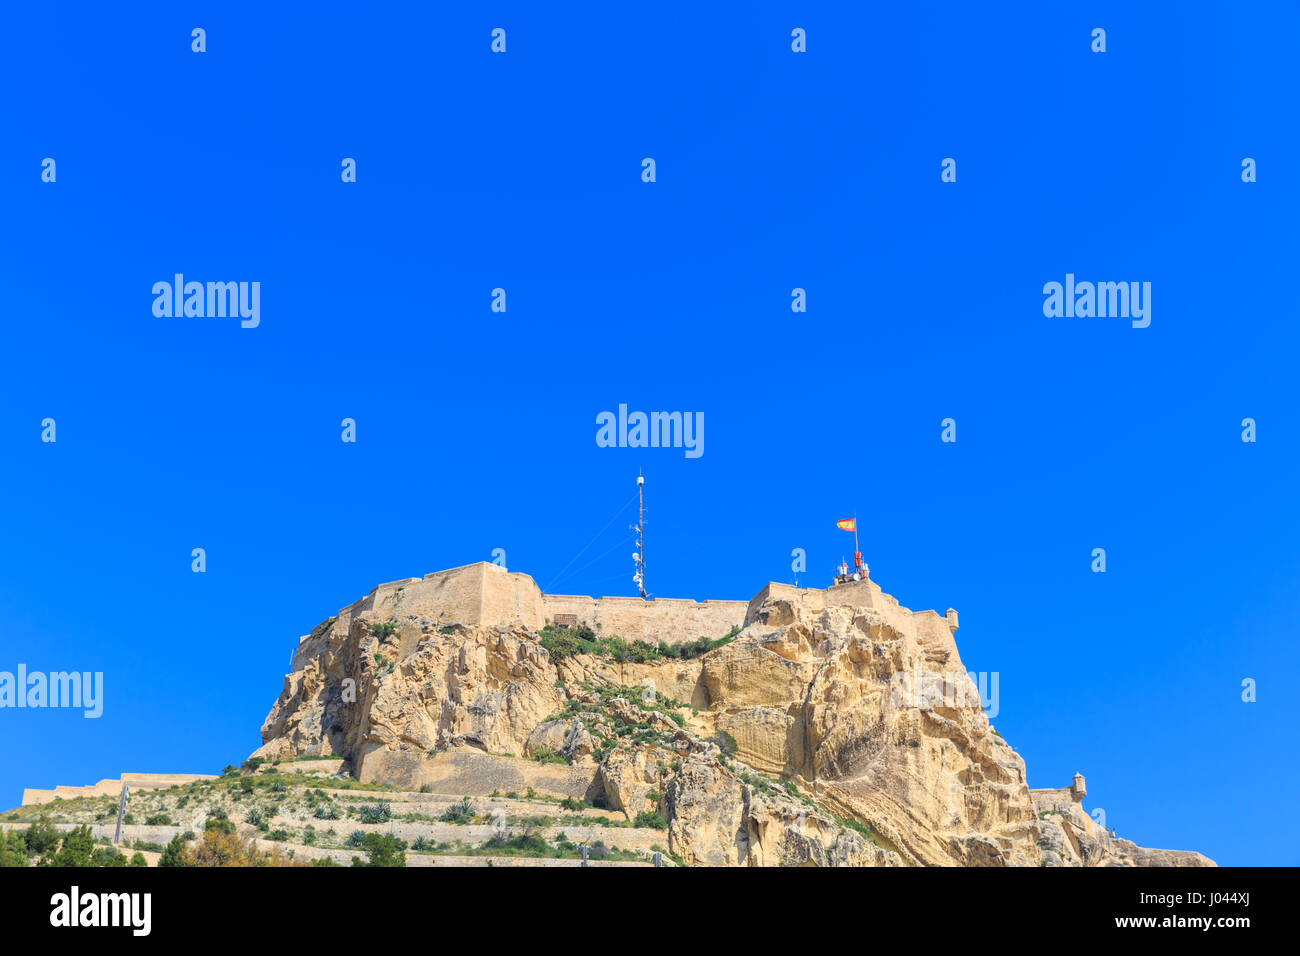 Mount Benacantil with Santa Bárbara Castle (Castillo de Santa Bárbara) at the top  Alicante, Spain Stock Photo